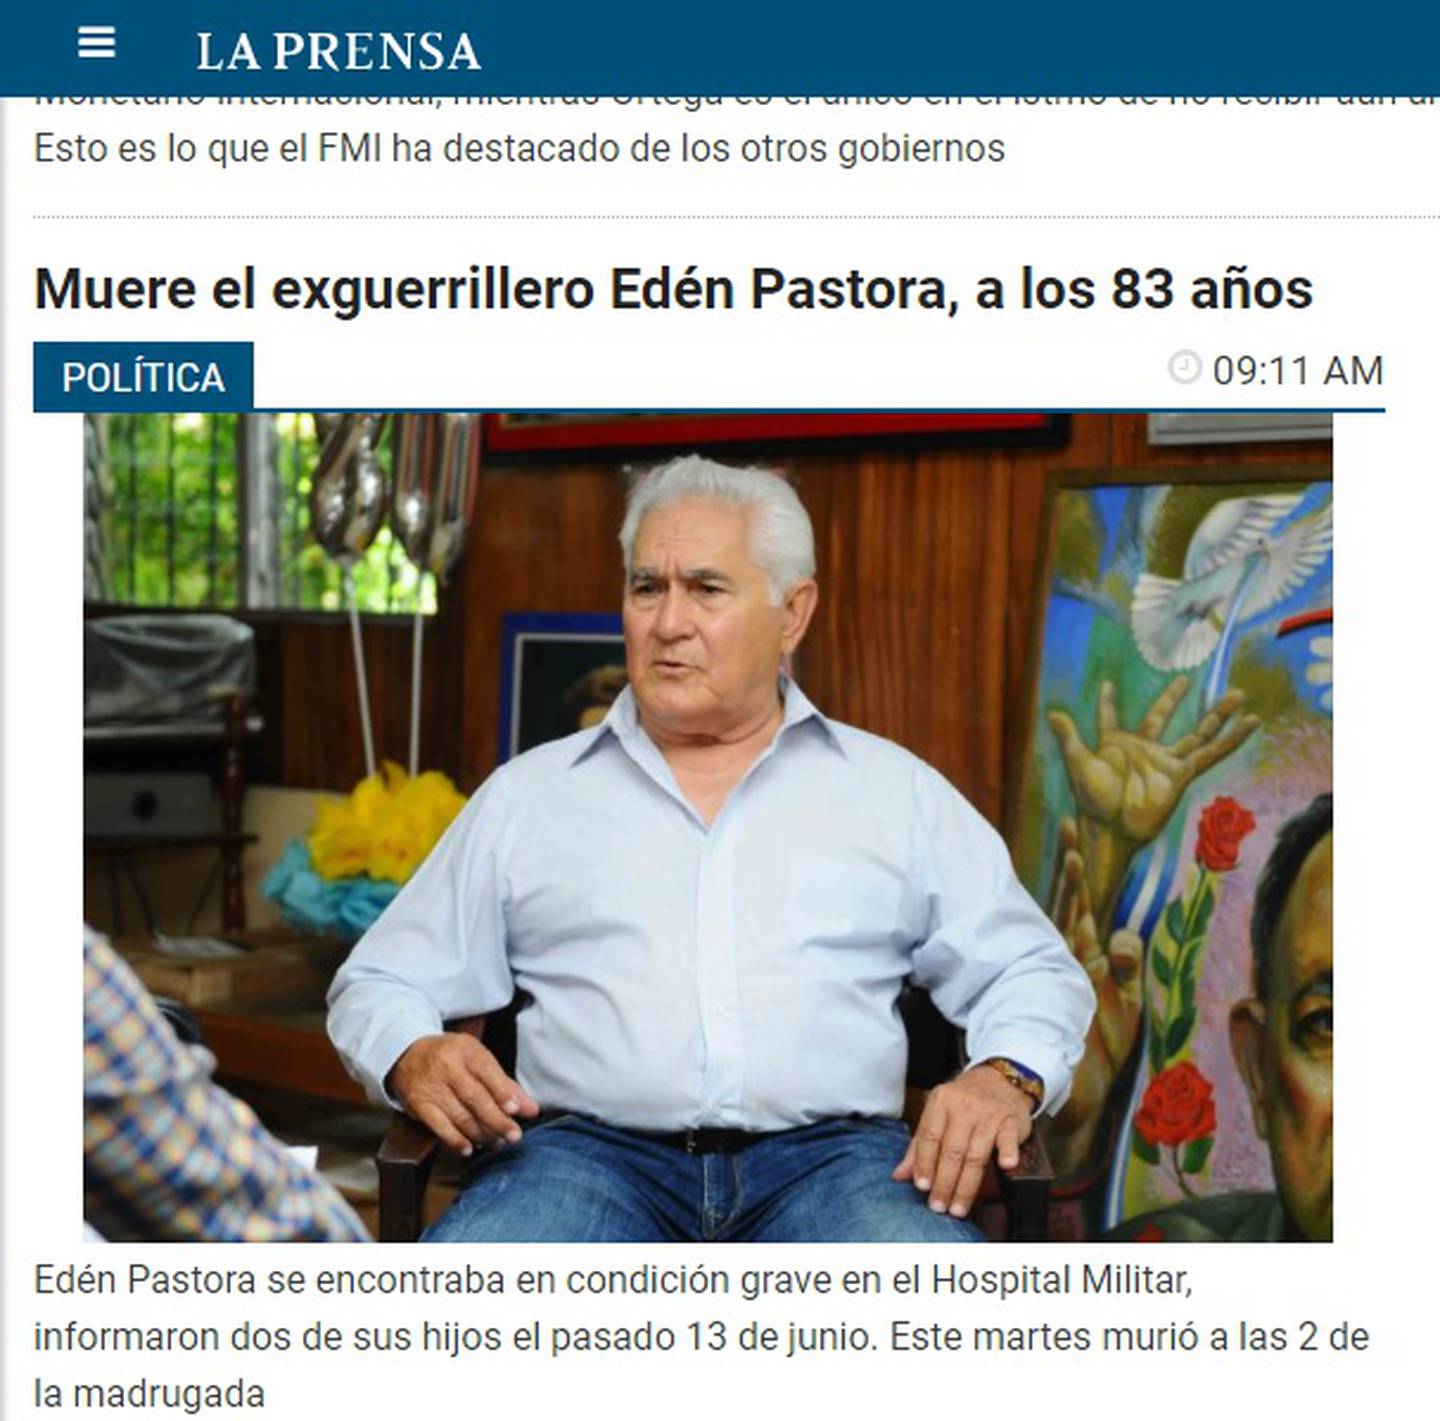 El periódico La Prensa de Nicaragua confirma la muerte de Edén Pastora